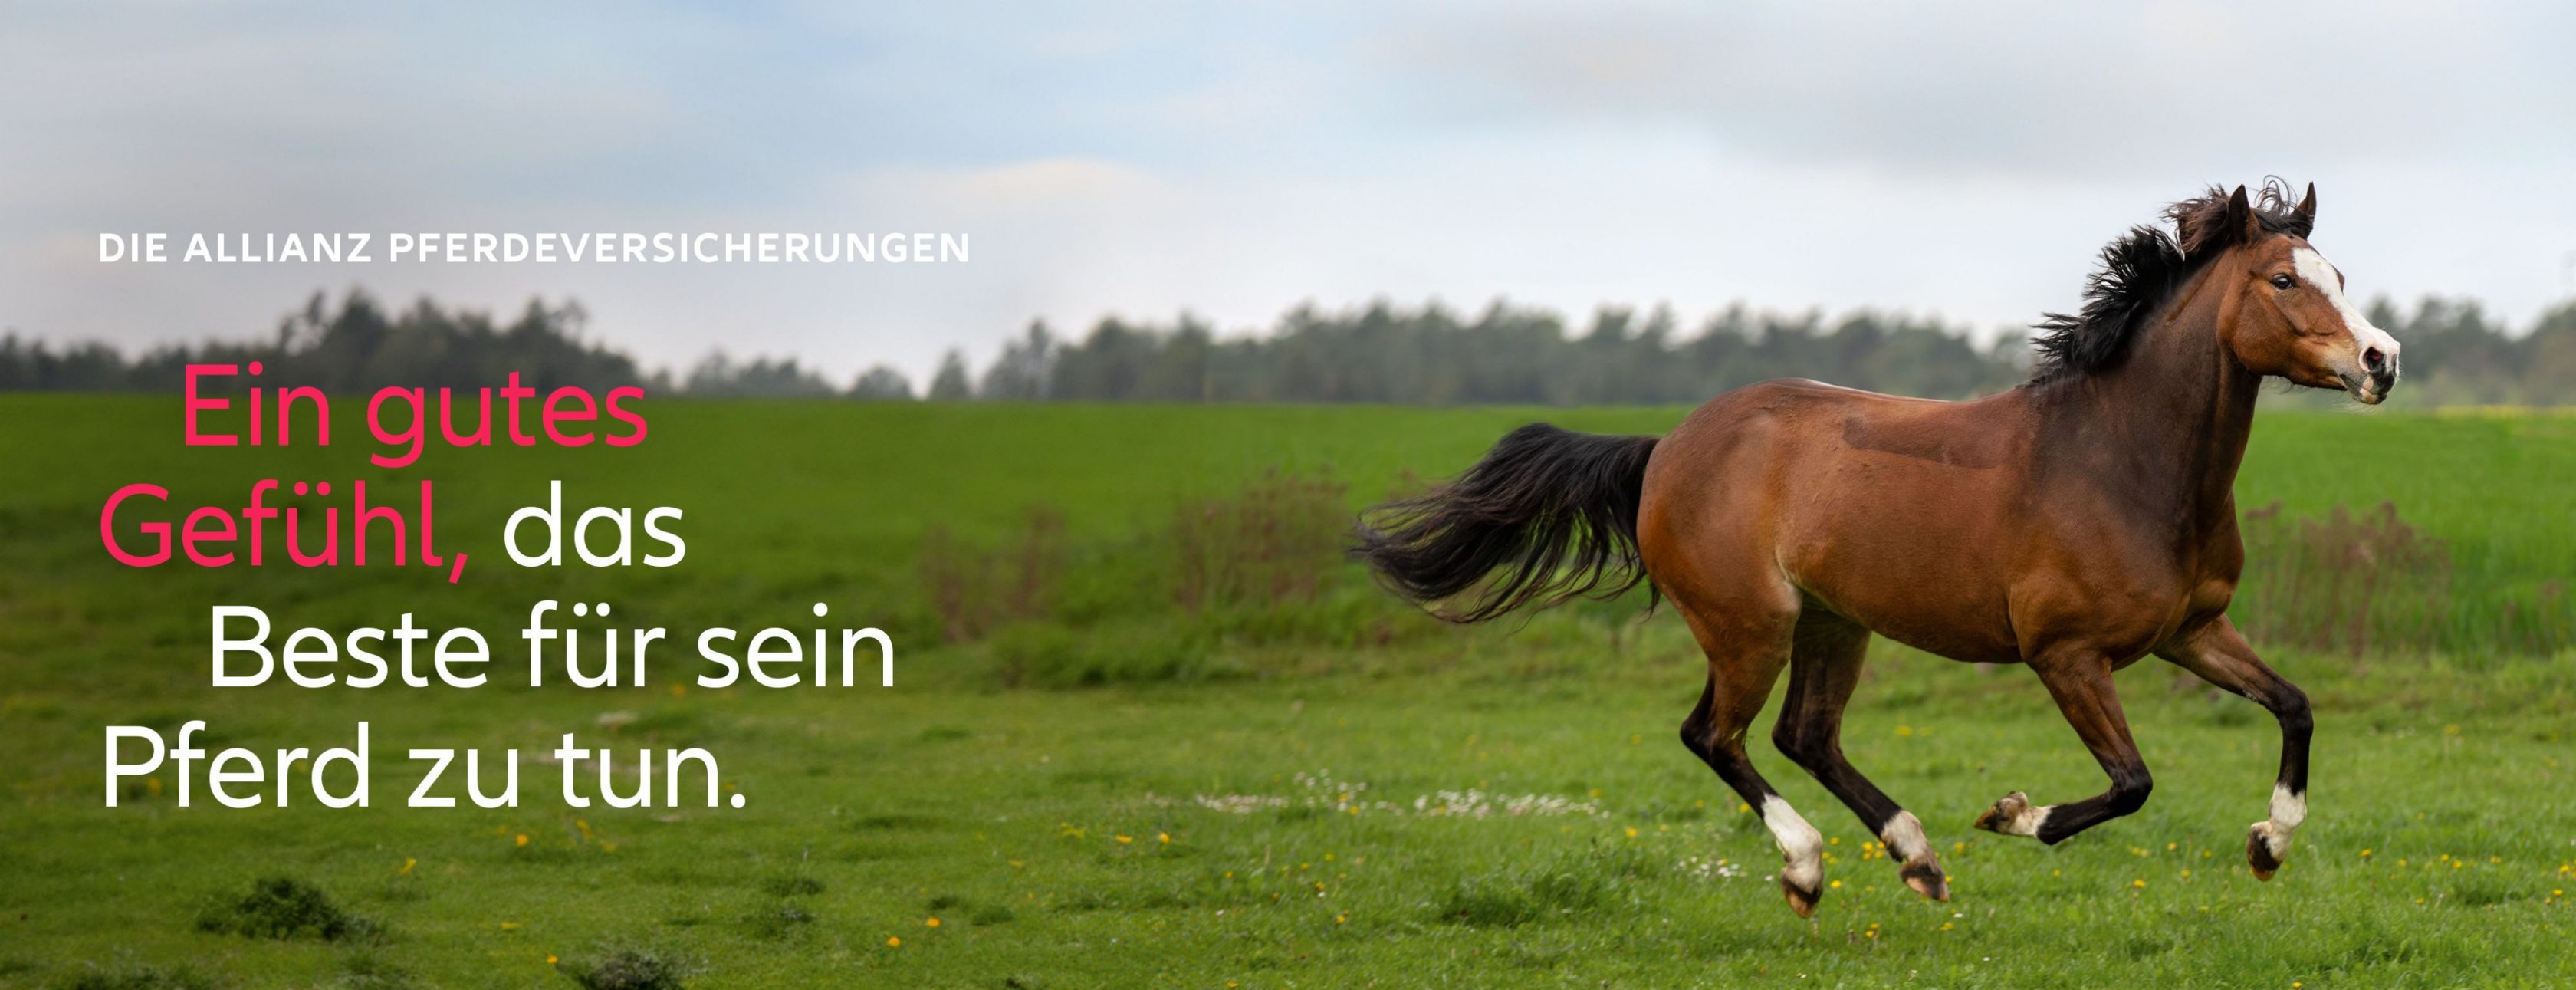 Allianz Versicherung Patrick Maxelon Berlin - Pferd rennt auf der Weide